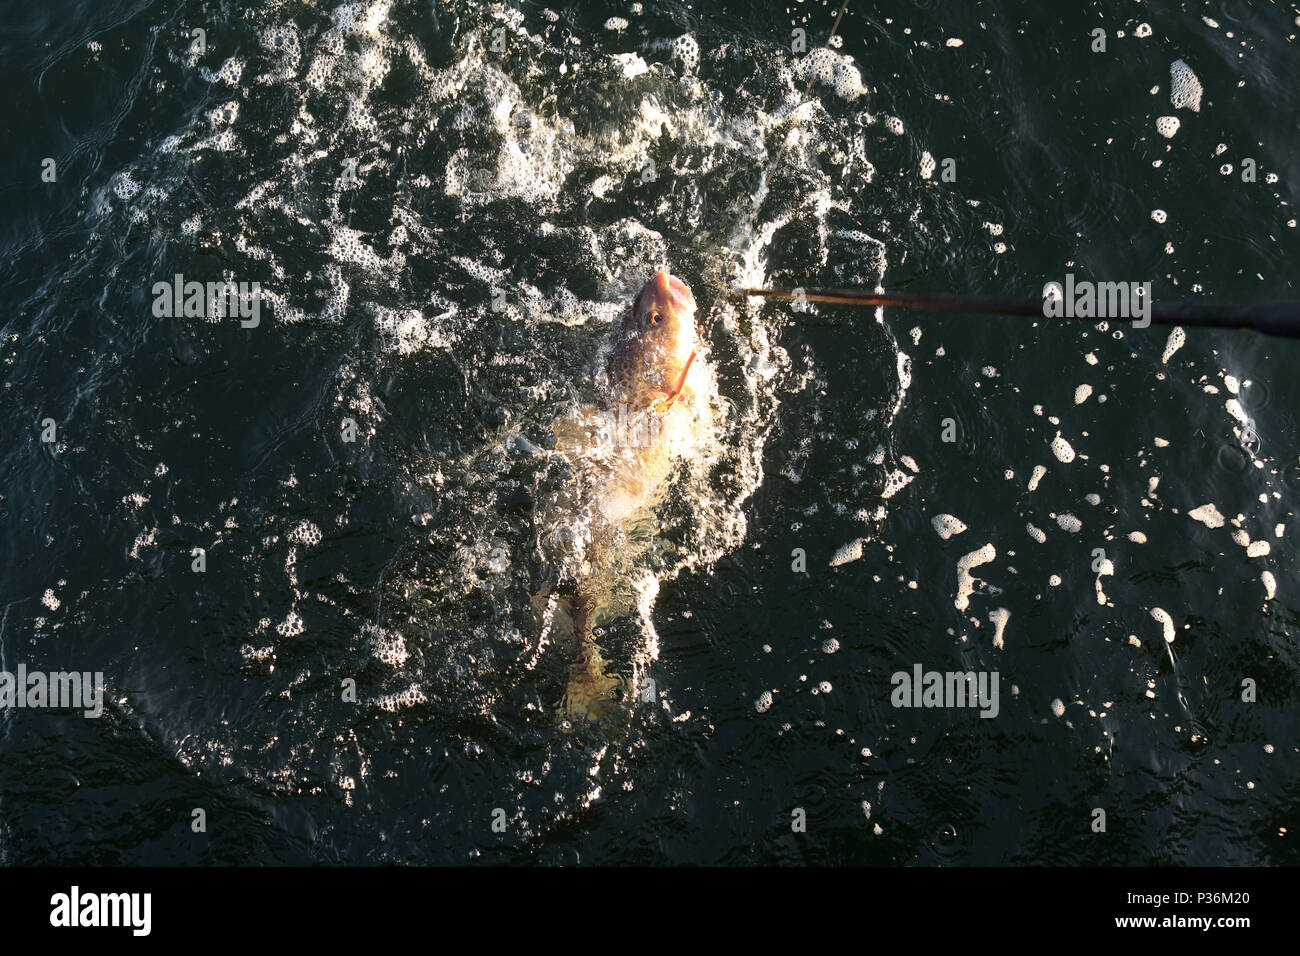 Wismar, Germany, a cod has bitten in deep-sea fishing Stock Photo